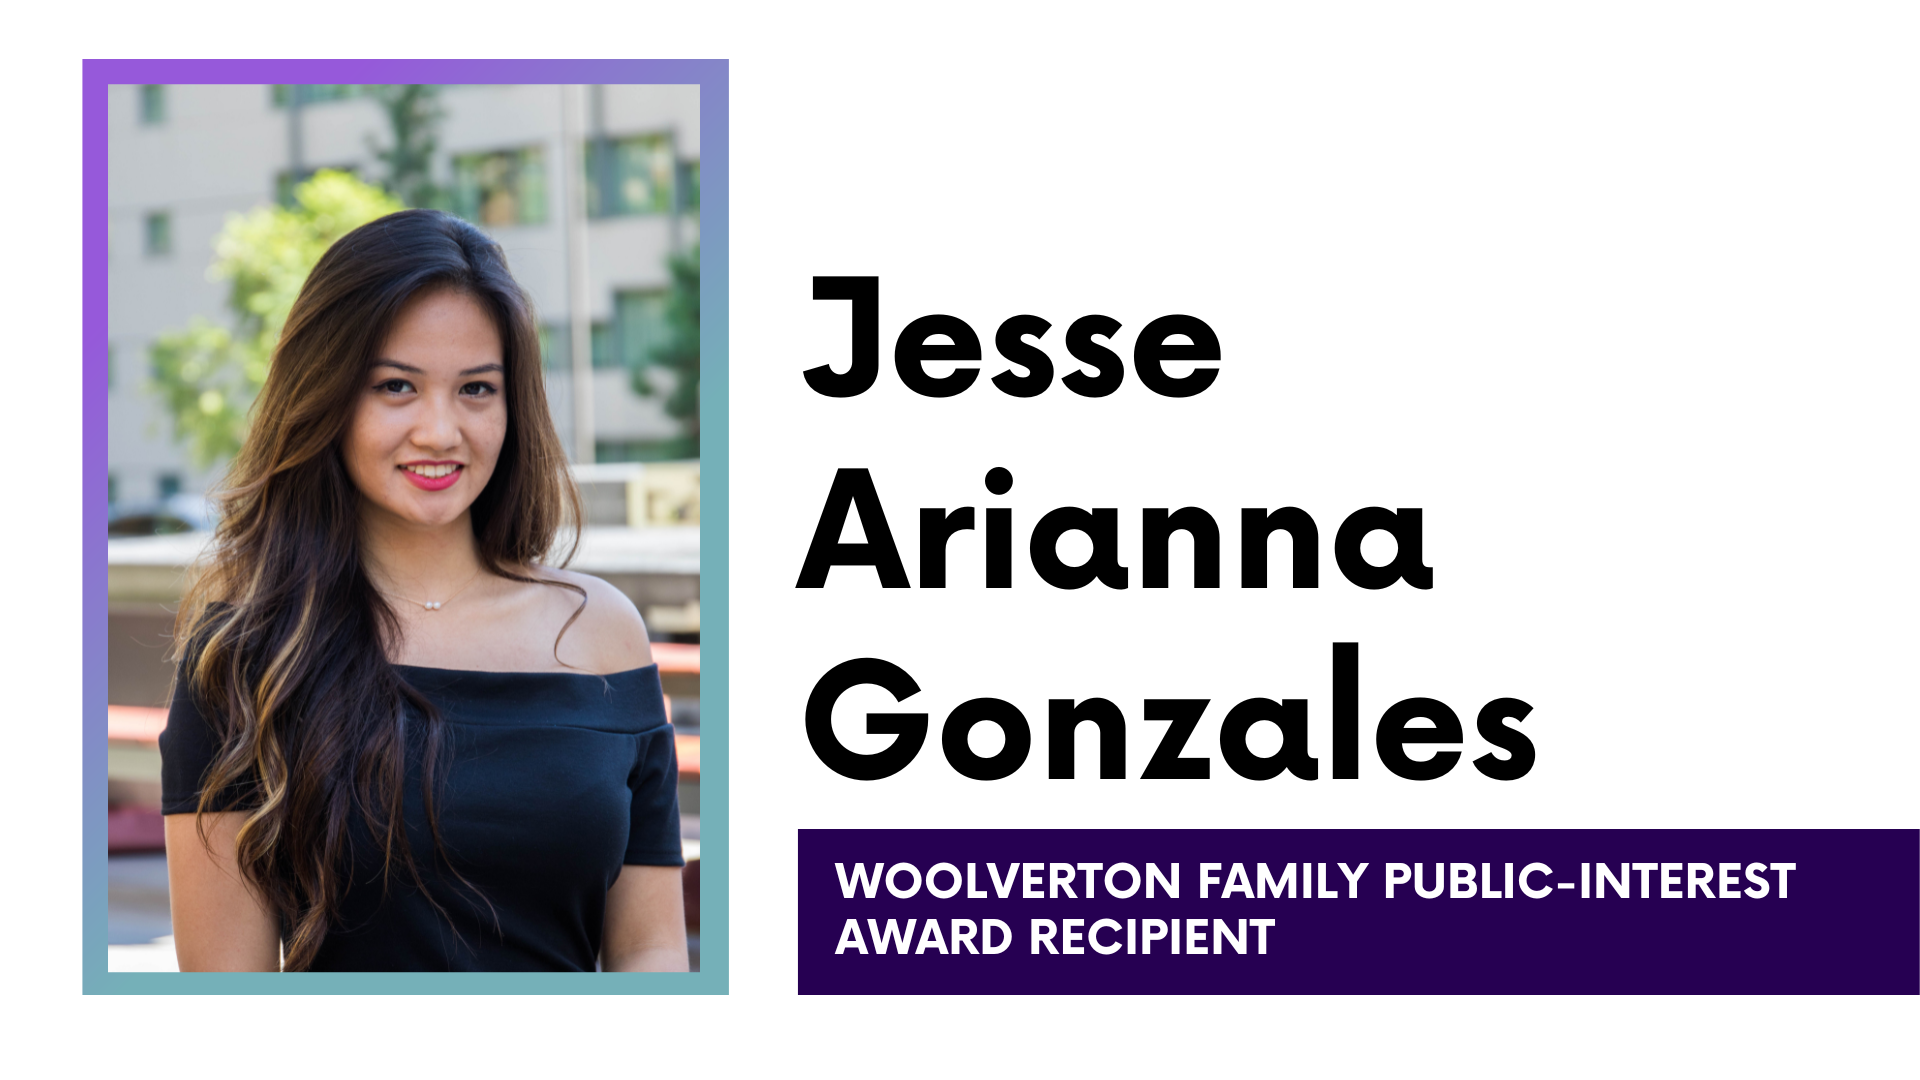 Jesse Arianna Gonzales Woolverton Family Public-Interest Award Recipient